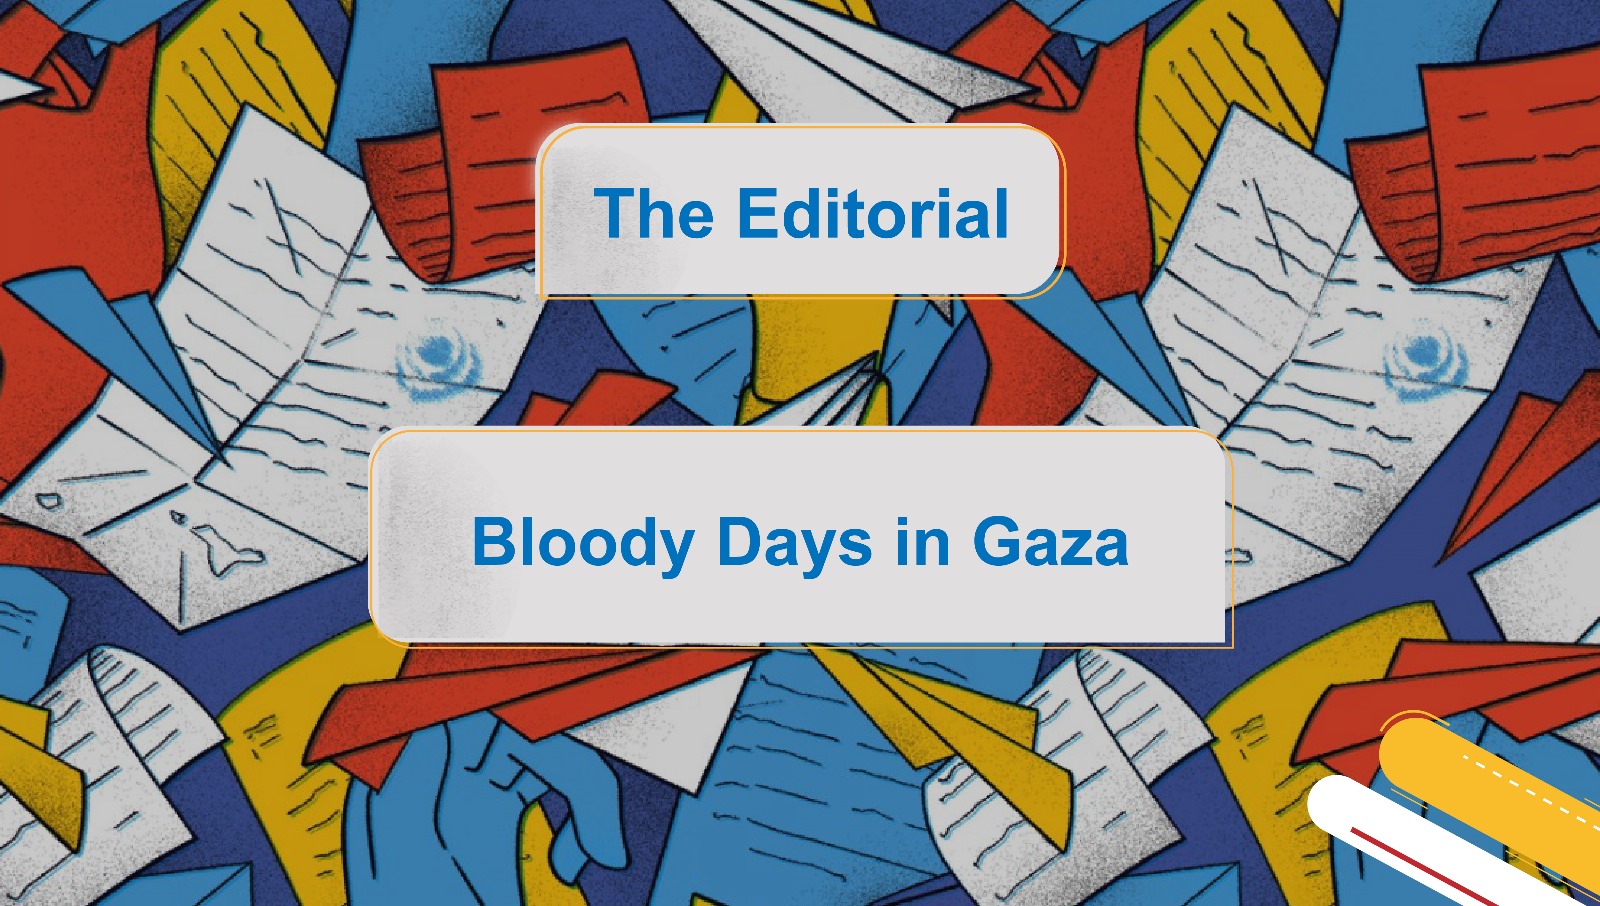 Bloody Days in Gaza